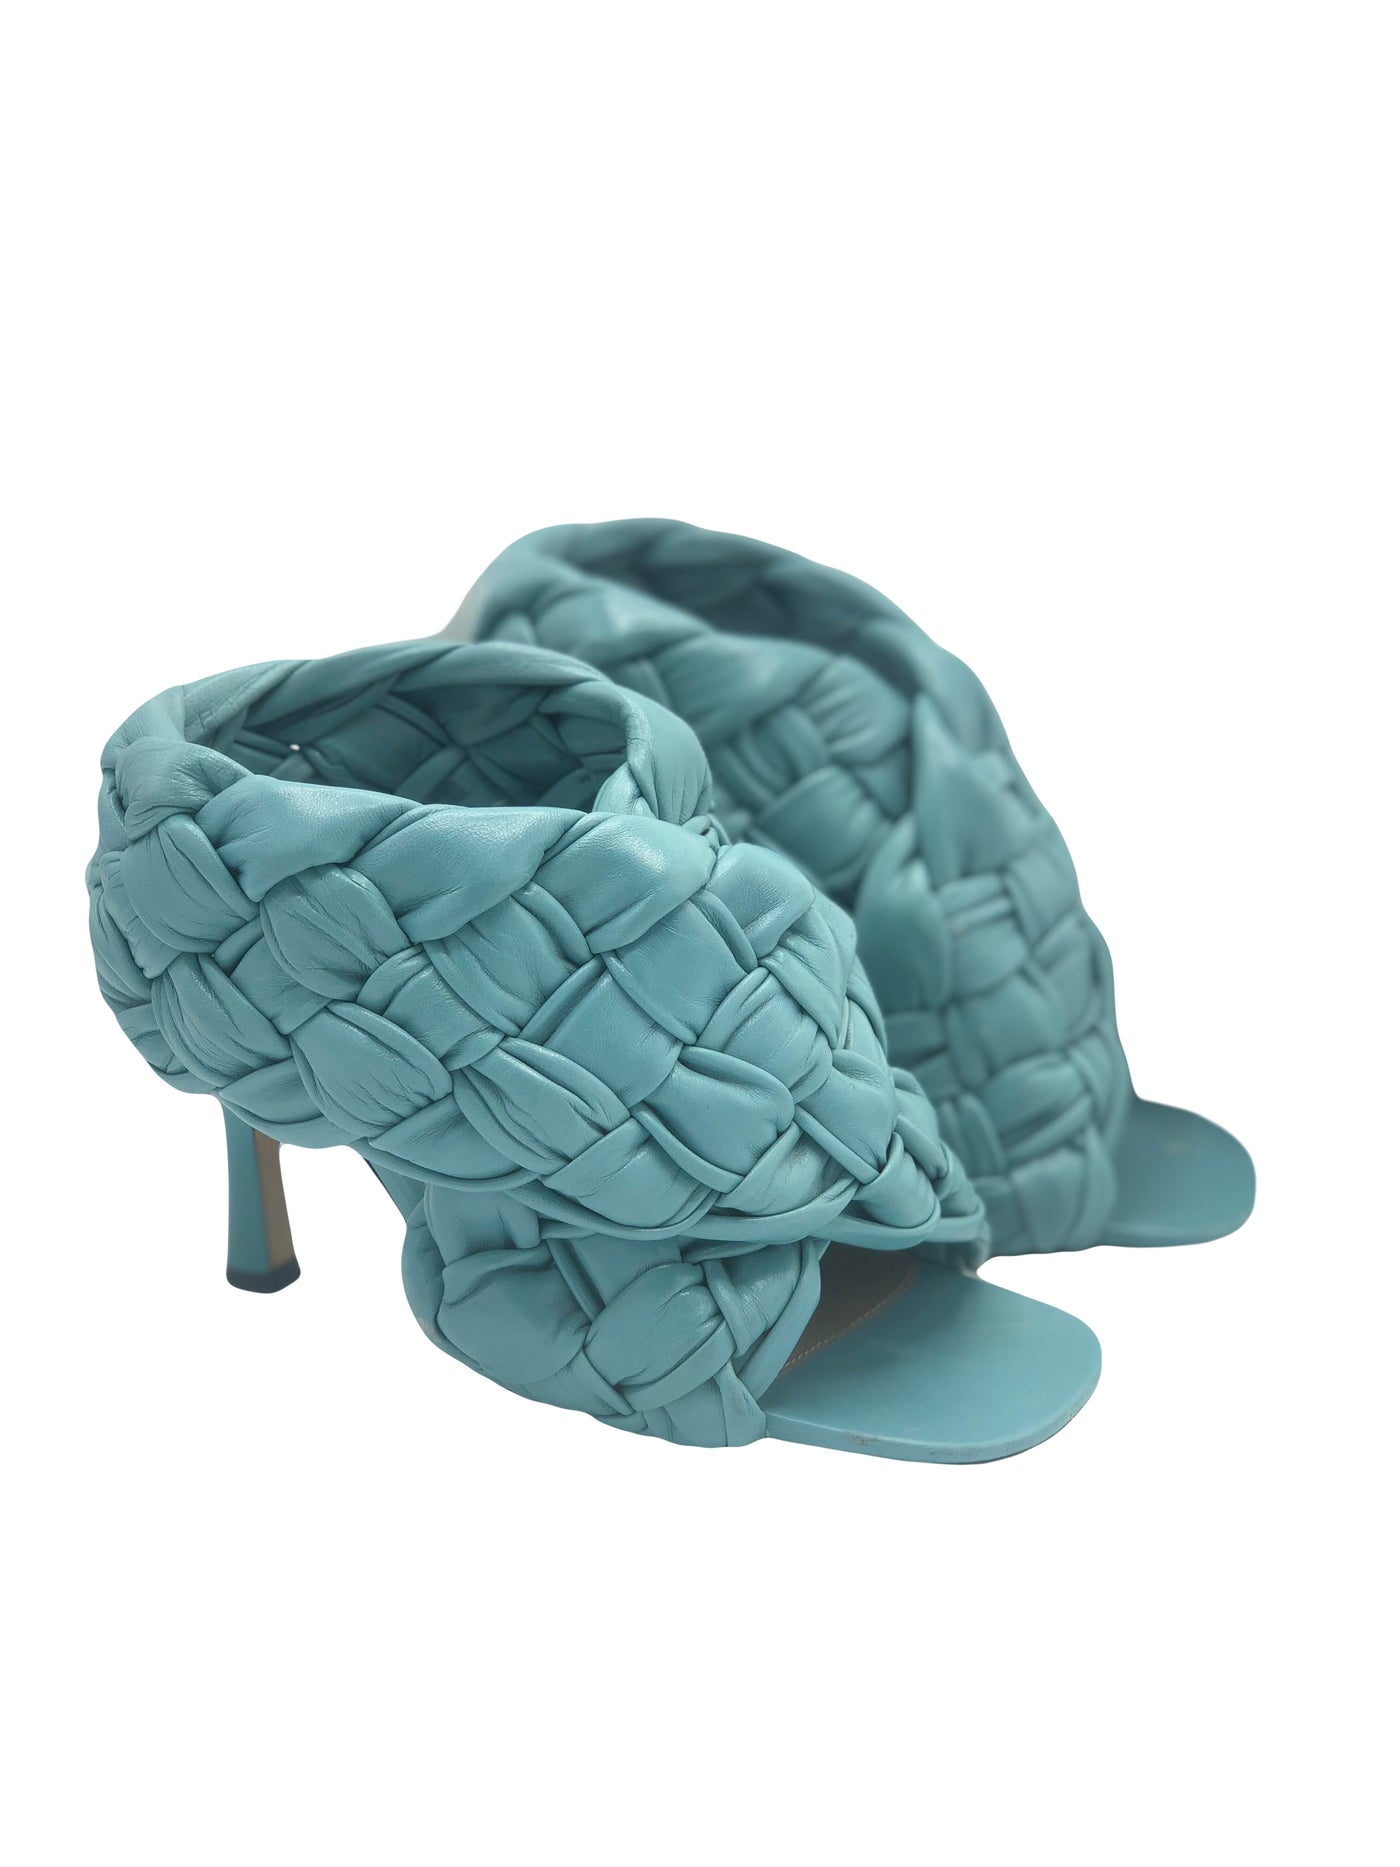 BOTTEGA VENETA Raffia blue heels size 37.5 RRP: £1202